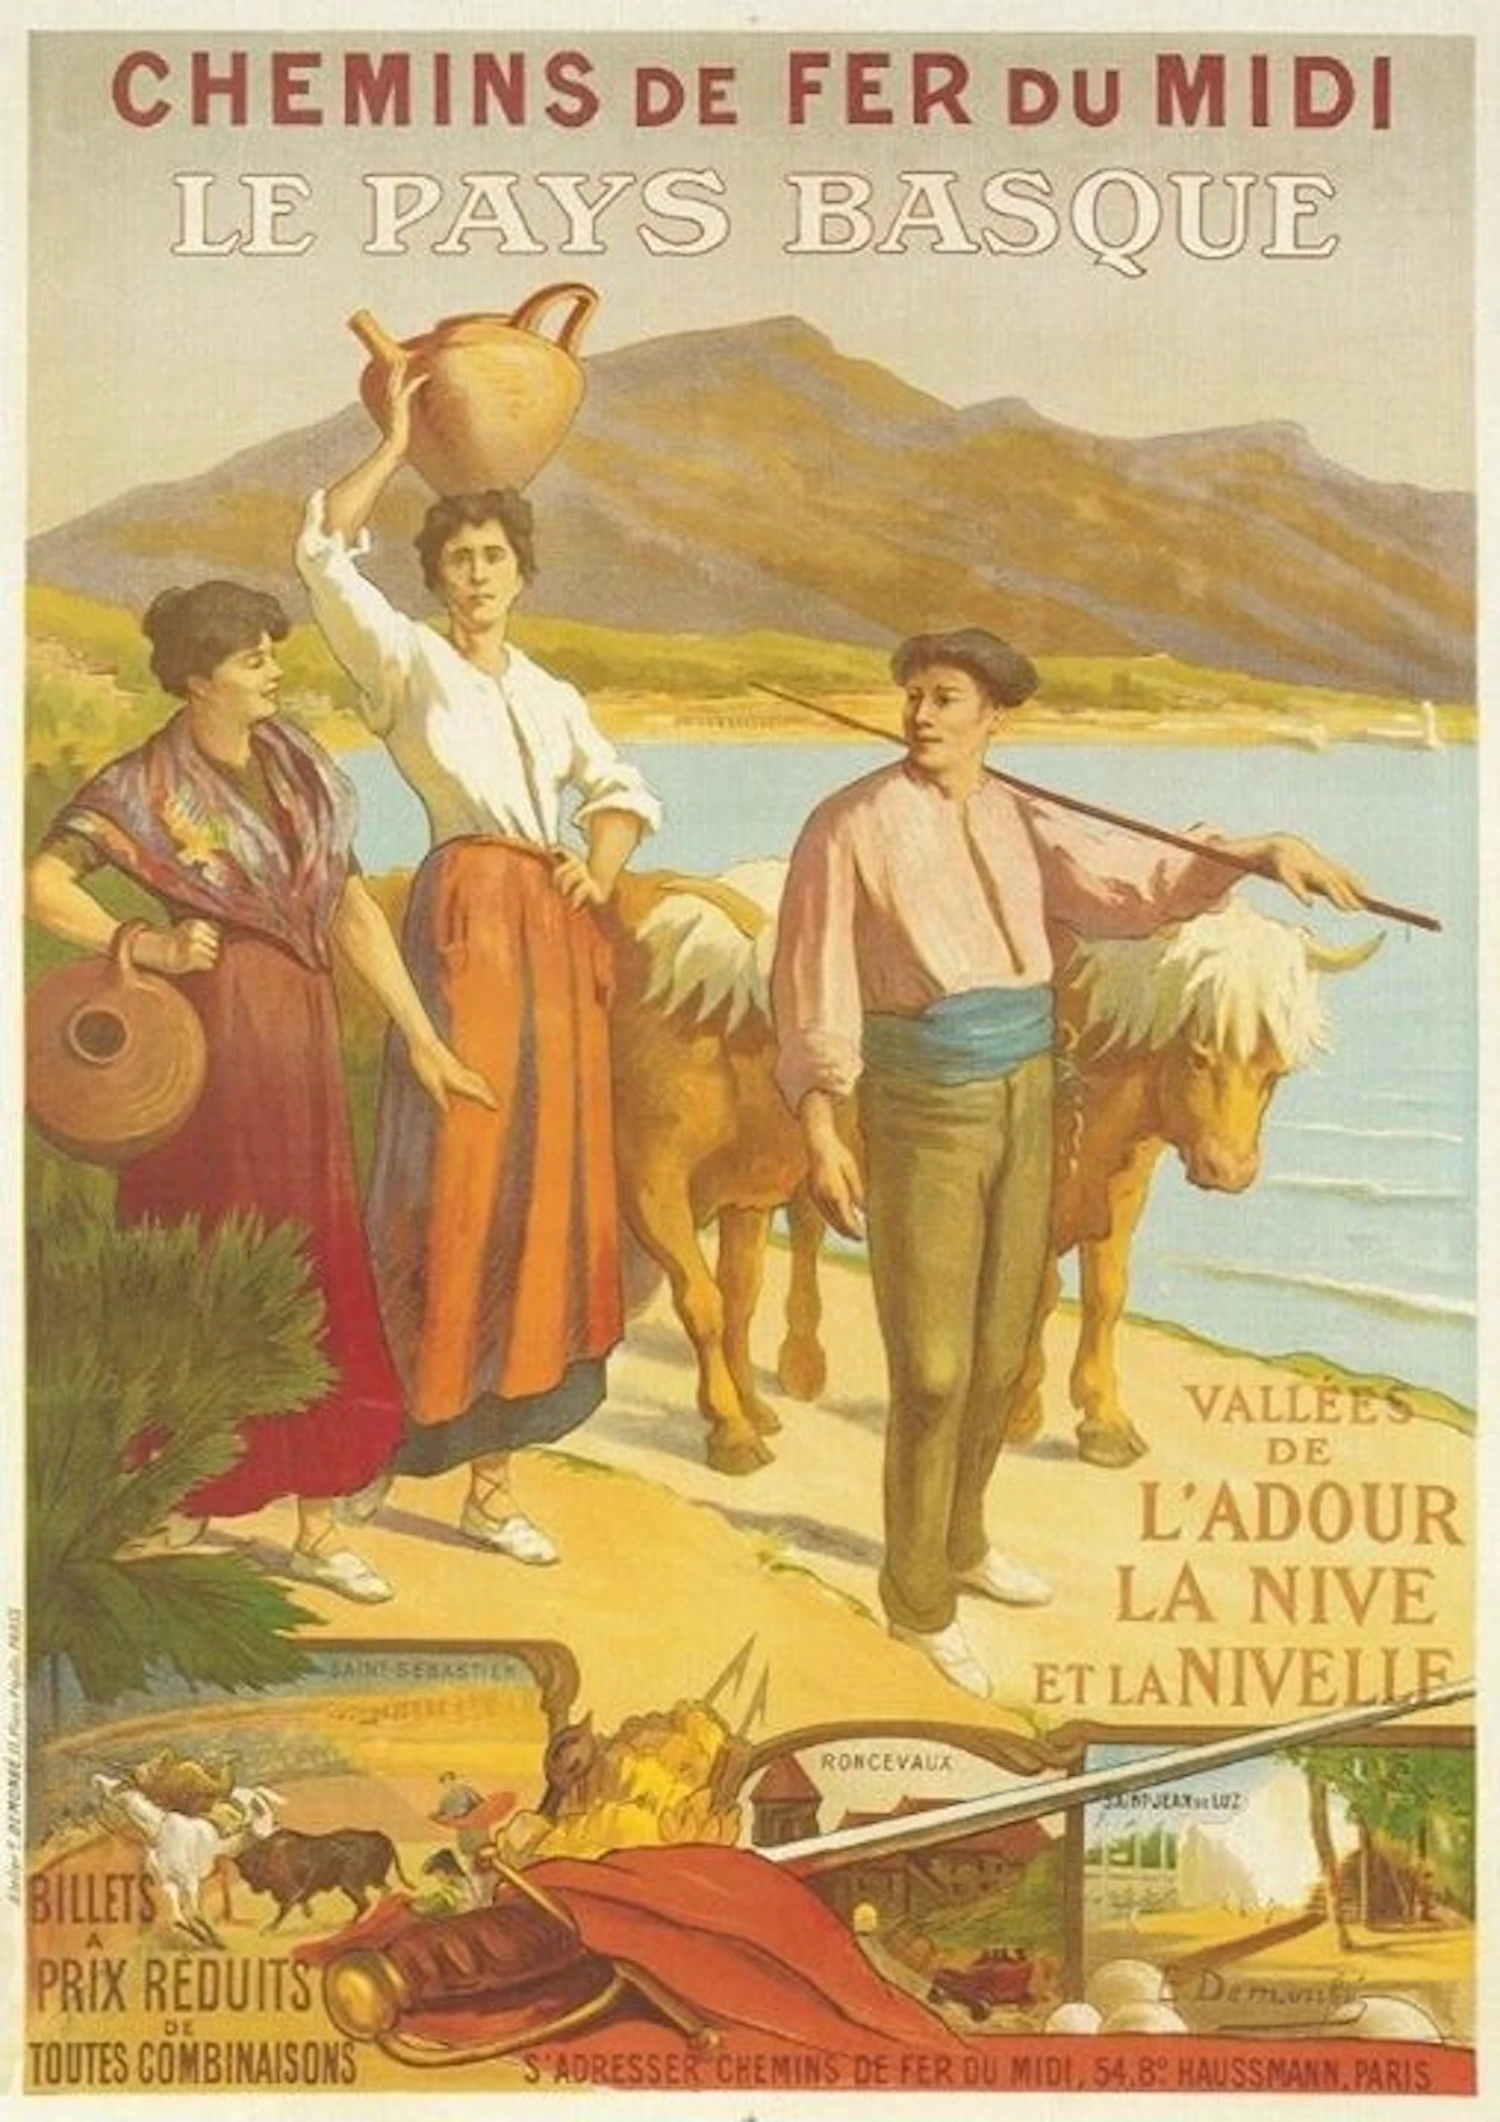 LAULHÈREに資料として残されている古いイメージ画、羊飼いがベレーをかぶっている様子がわかる